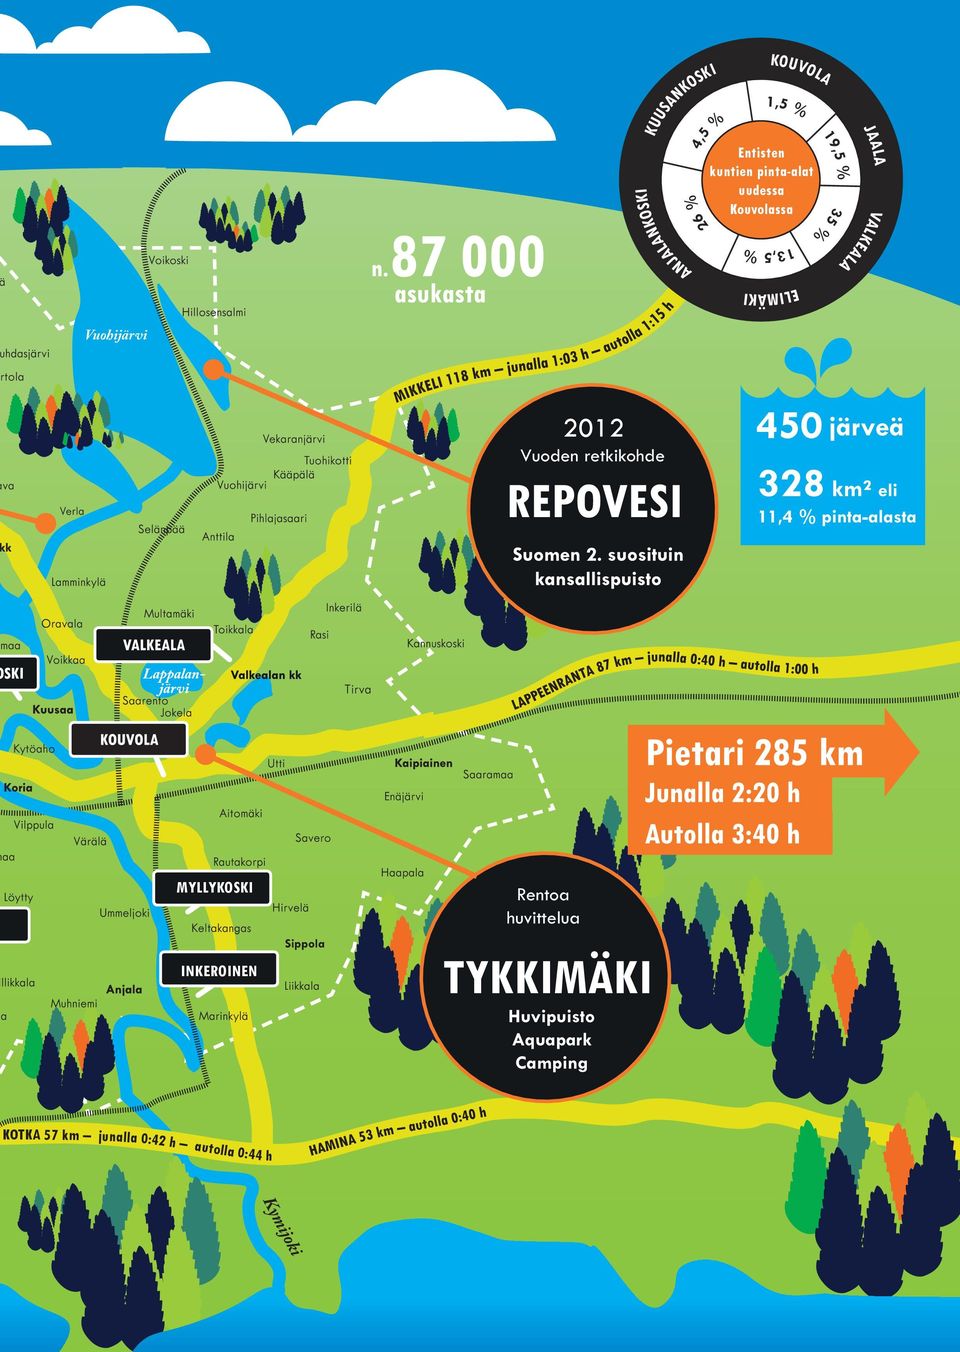 retkikohde 450 järveä 328 km² eli 11,4 % pinta-alasta MYLLYKOSKI INKEROINEN Sippola